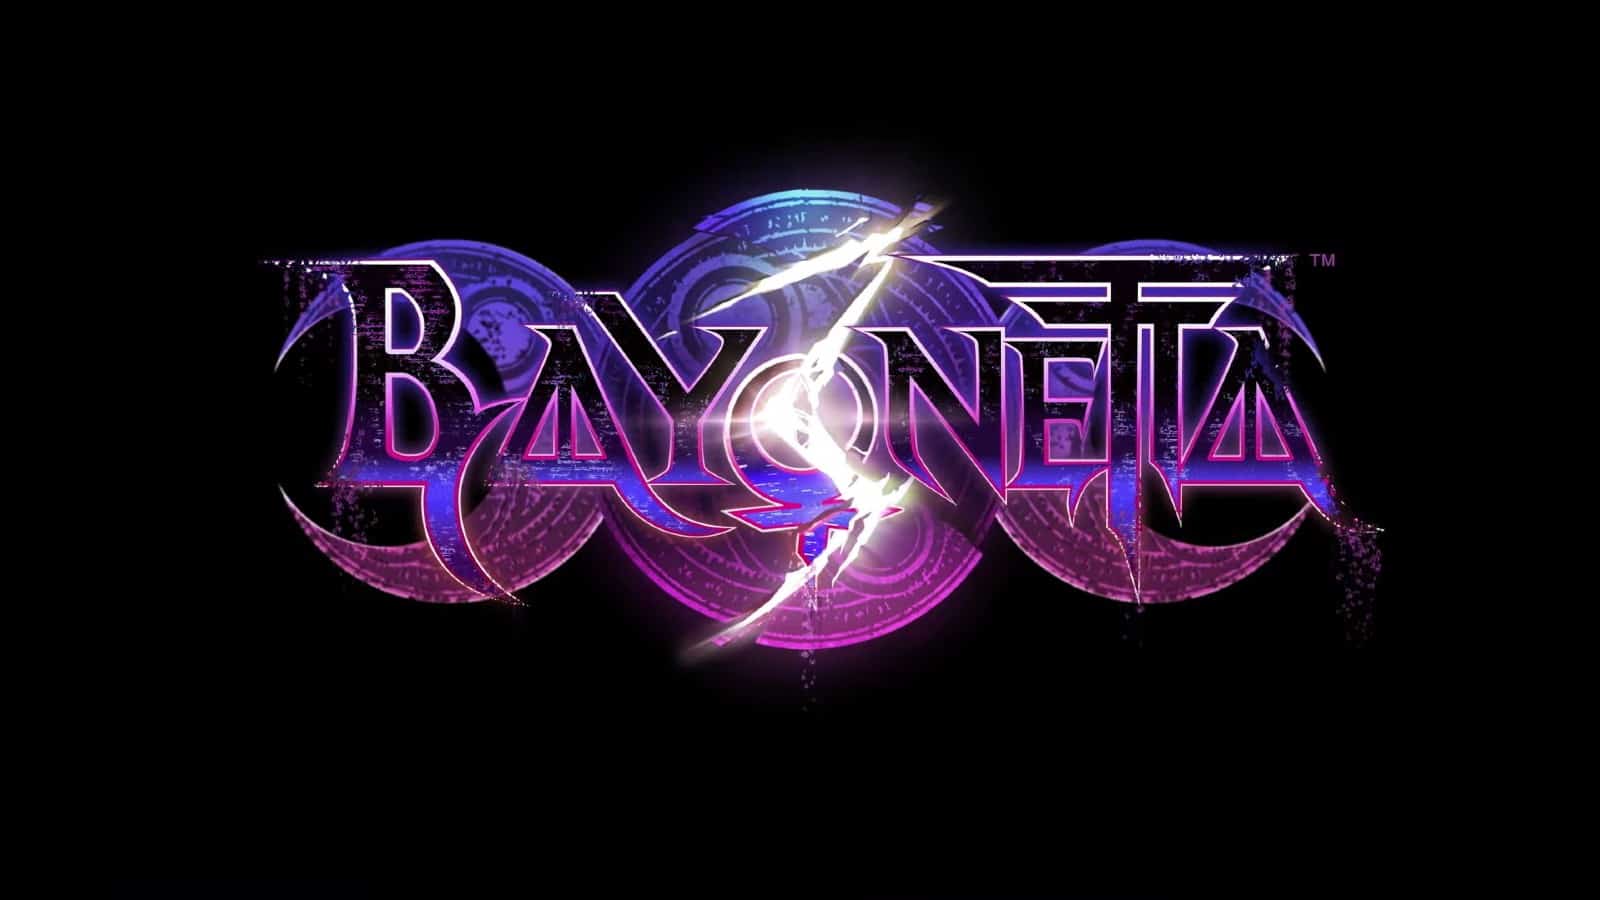 Nintendo Direct: Bayonetta, N64 y SEGA en Switch Online y más